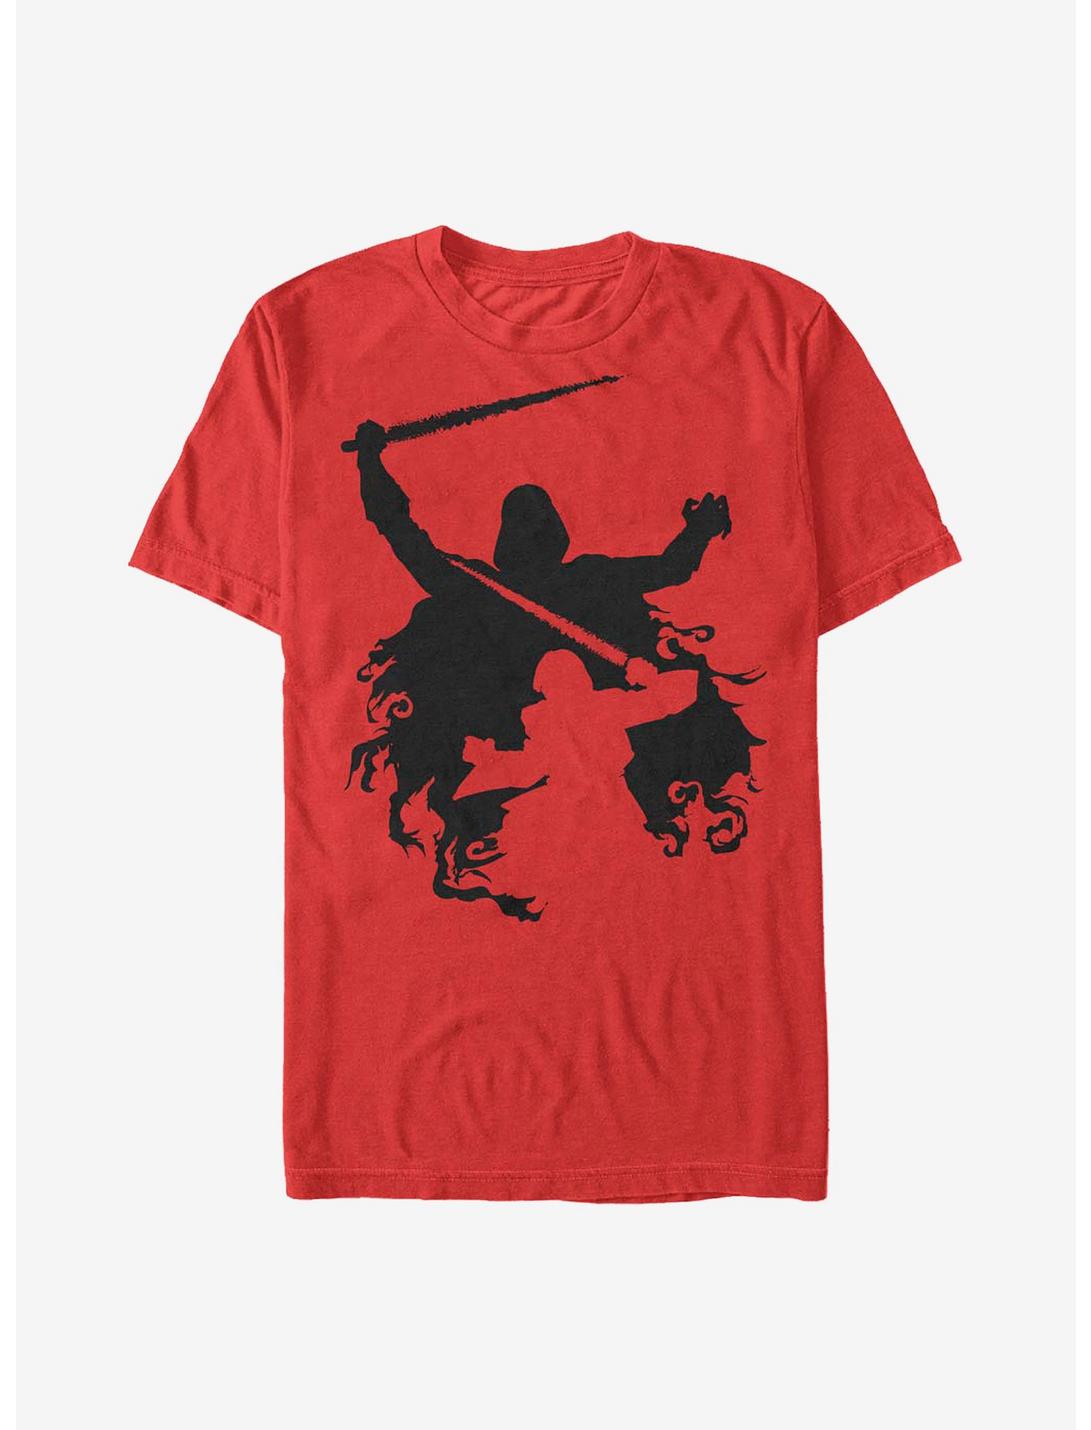 Star Wars Shadows T-Shirt, RED, hi-res